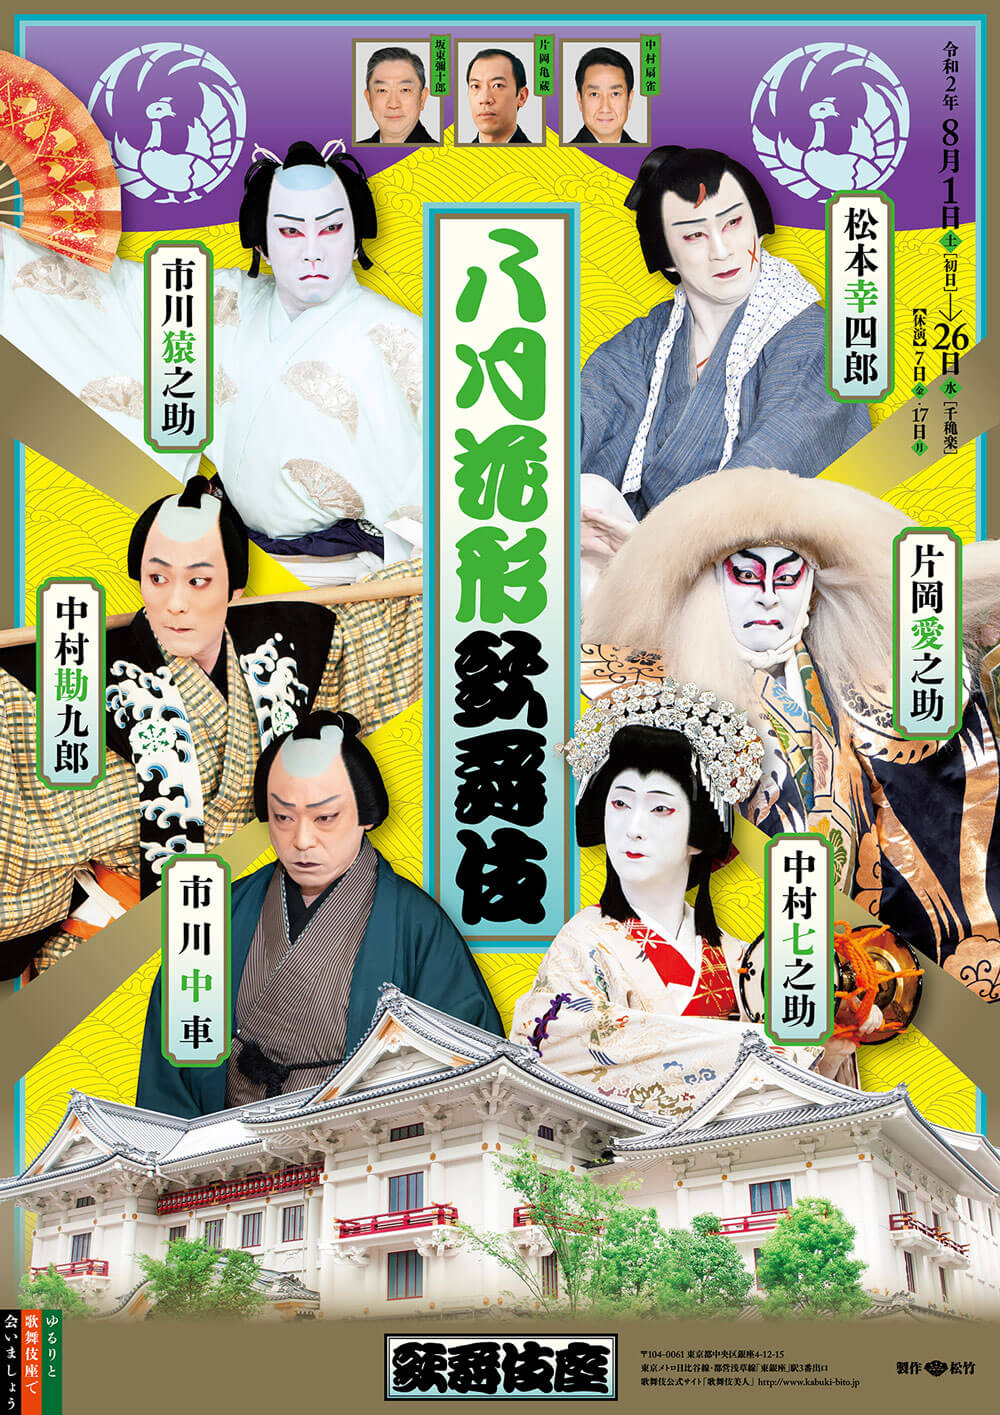 歌舞伎座「八月花形歌舞伎」ポスター公開